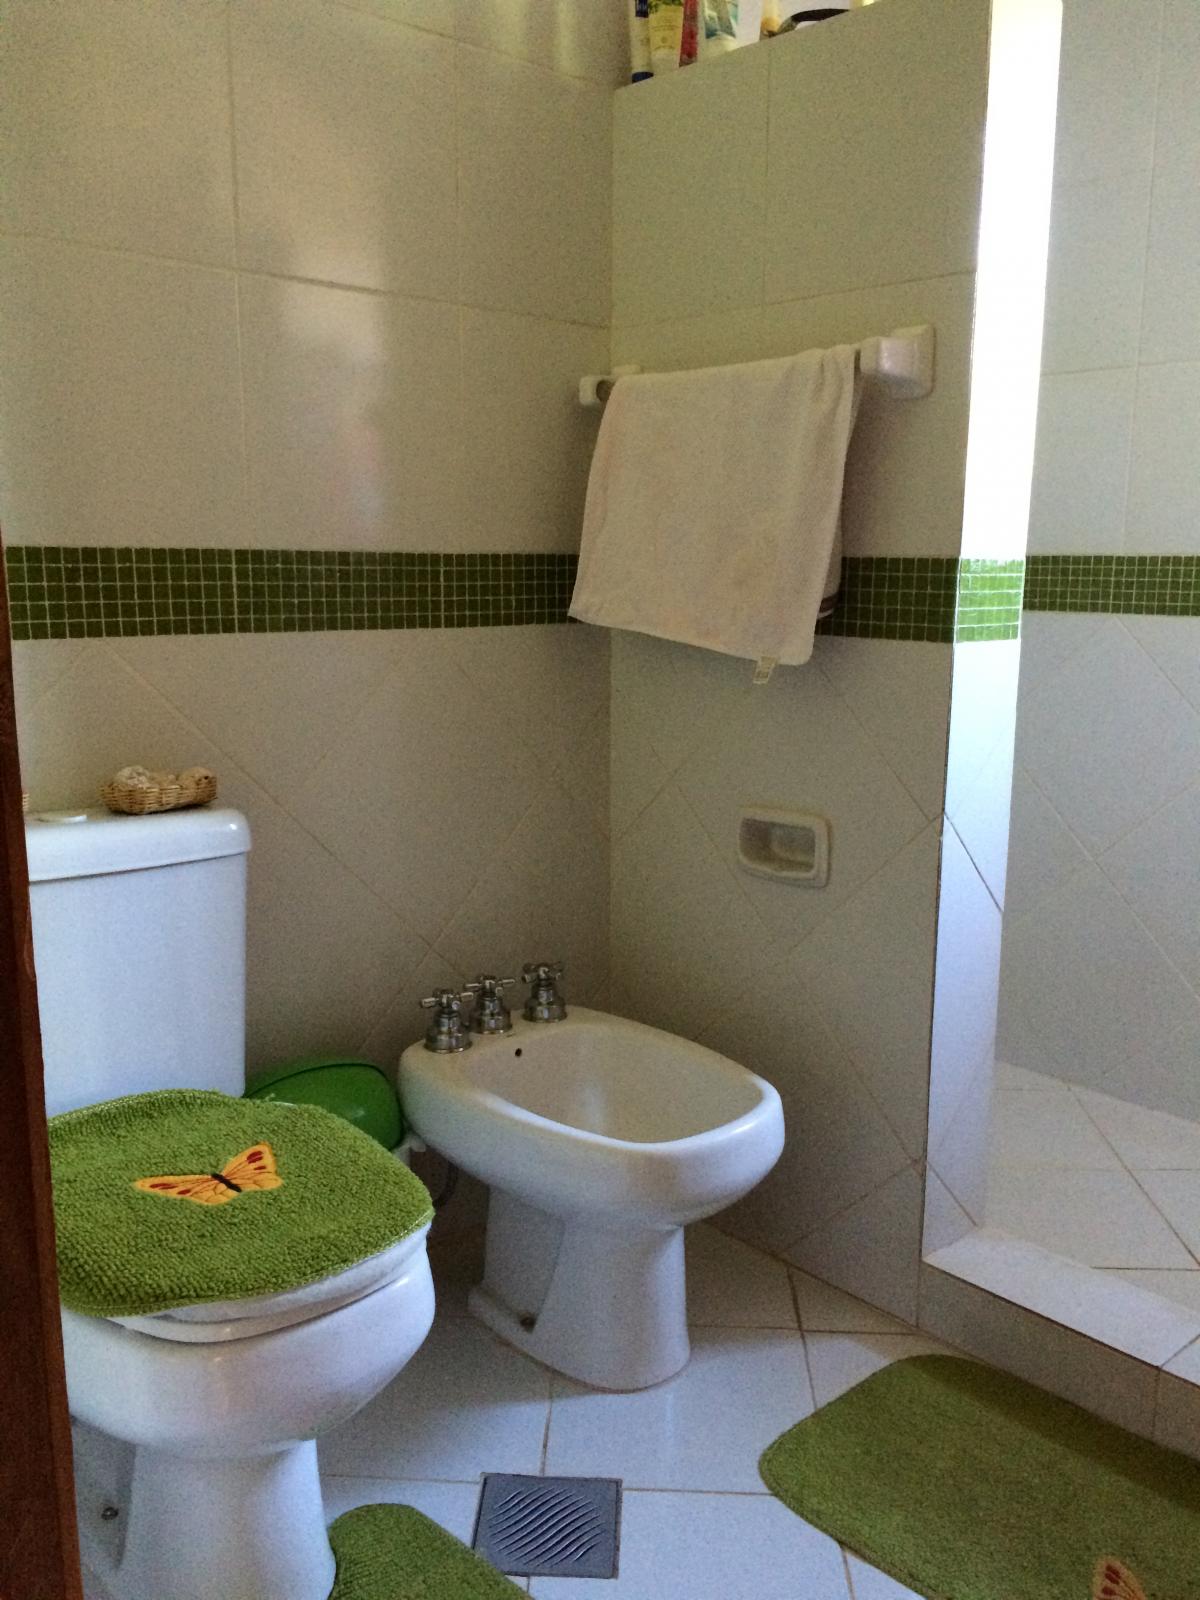 Baño compartido habitacion chicos